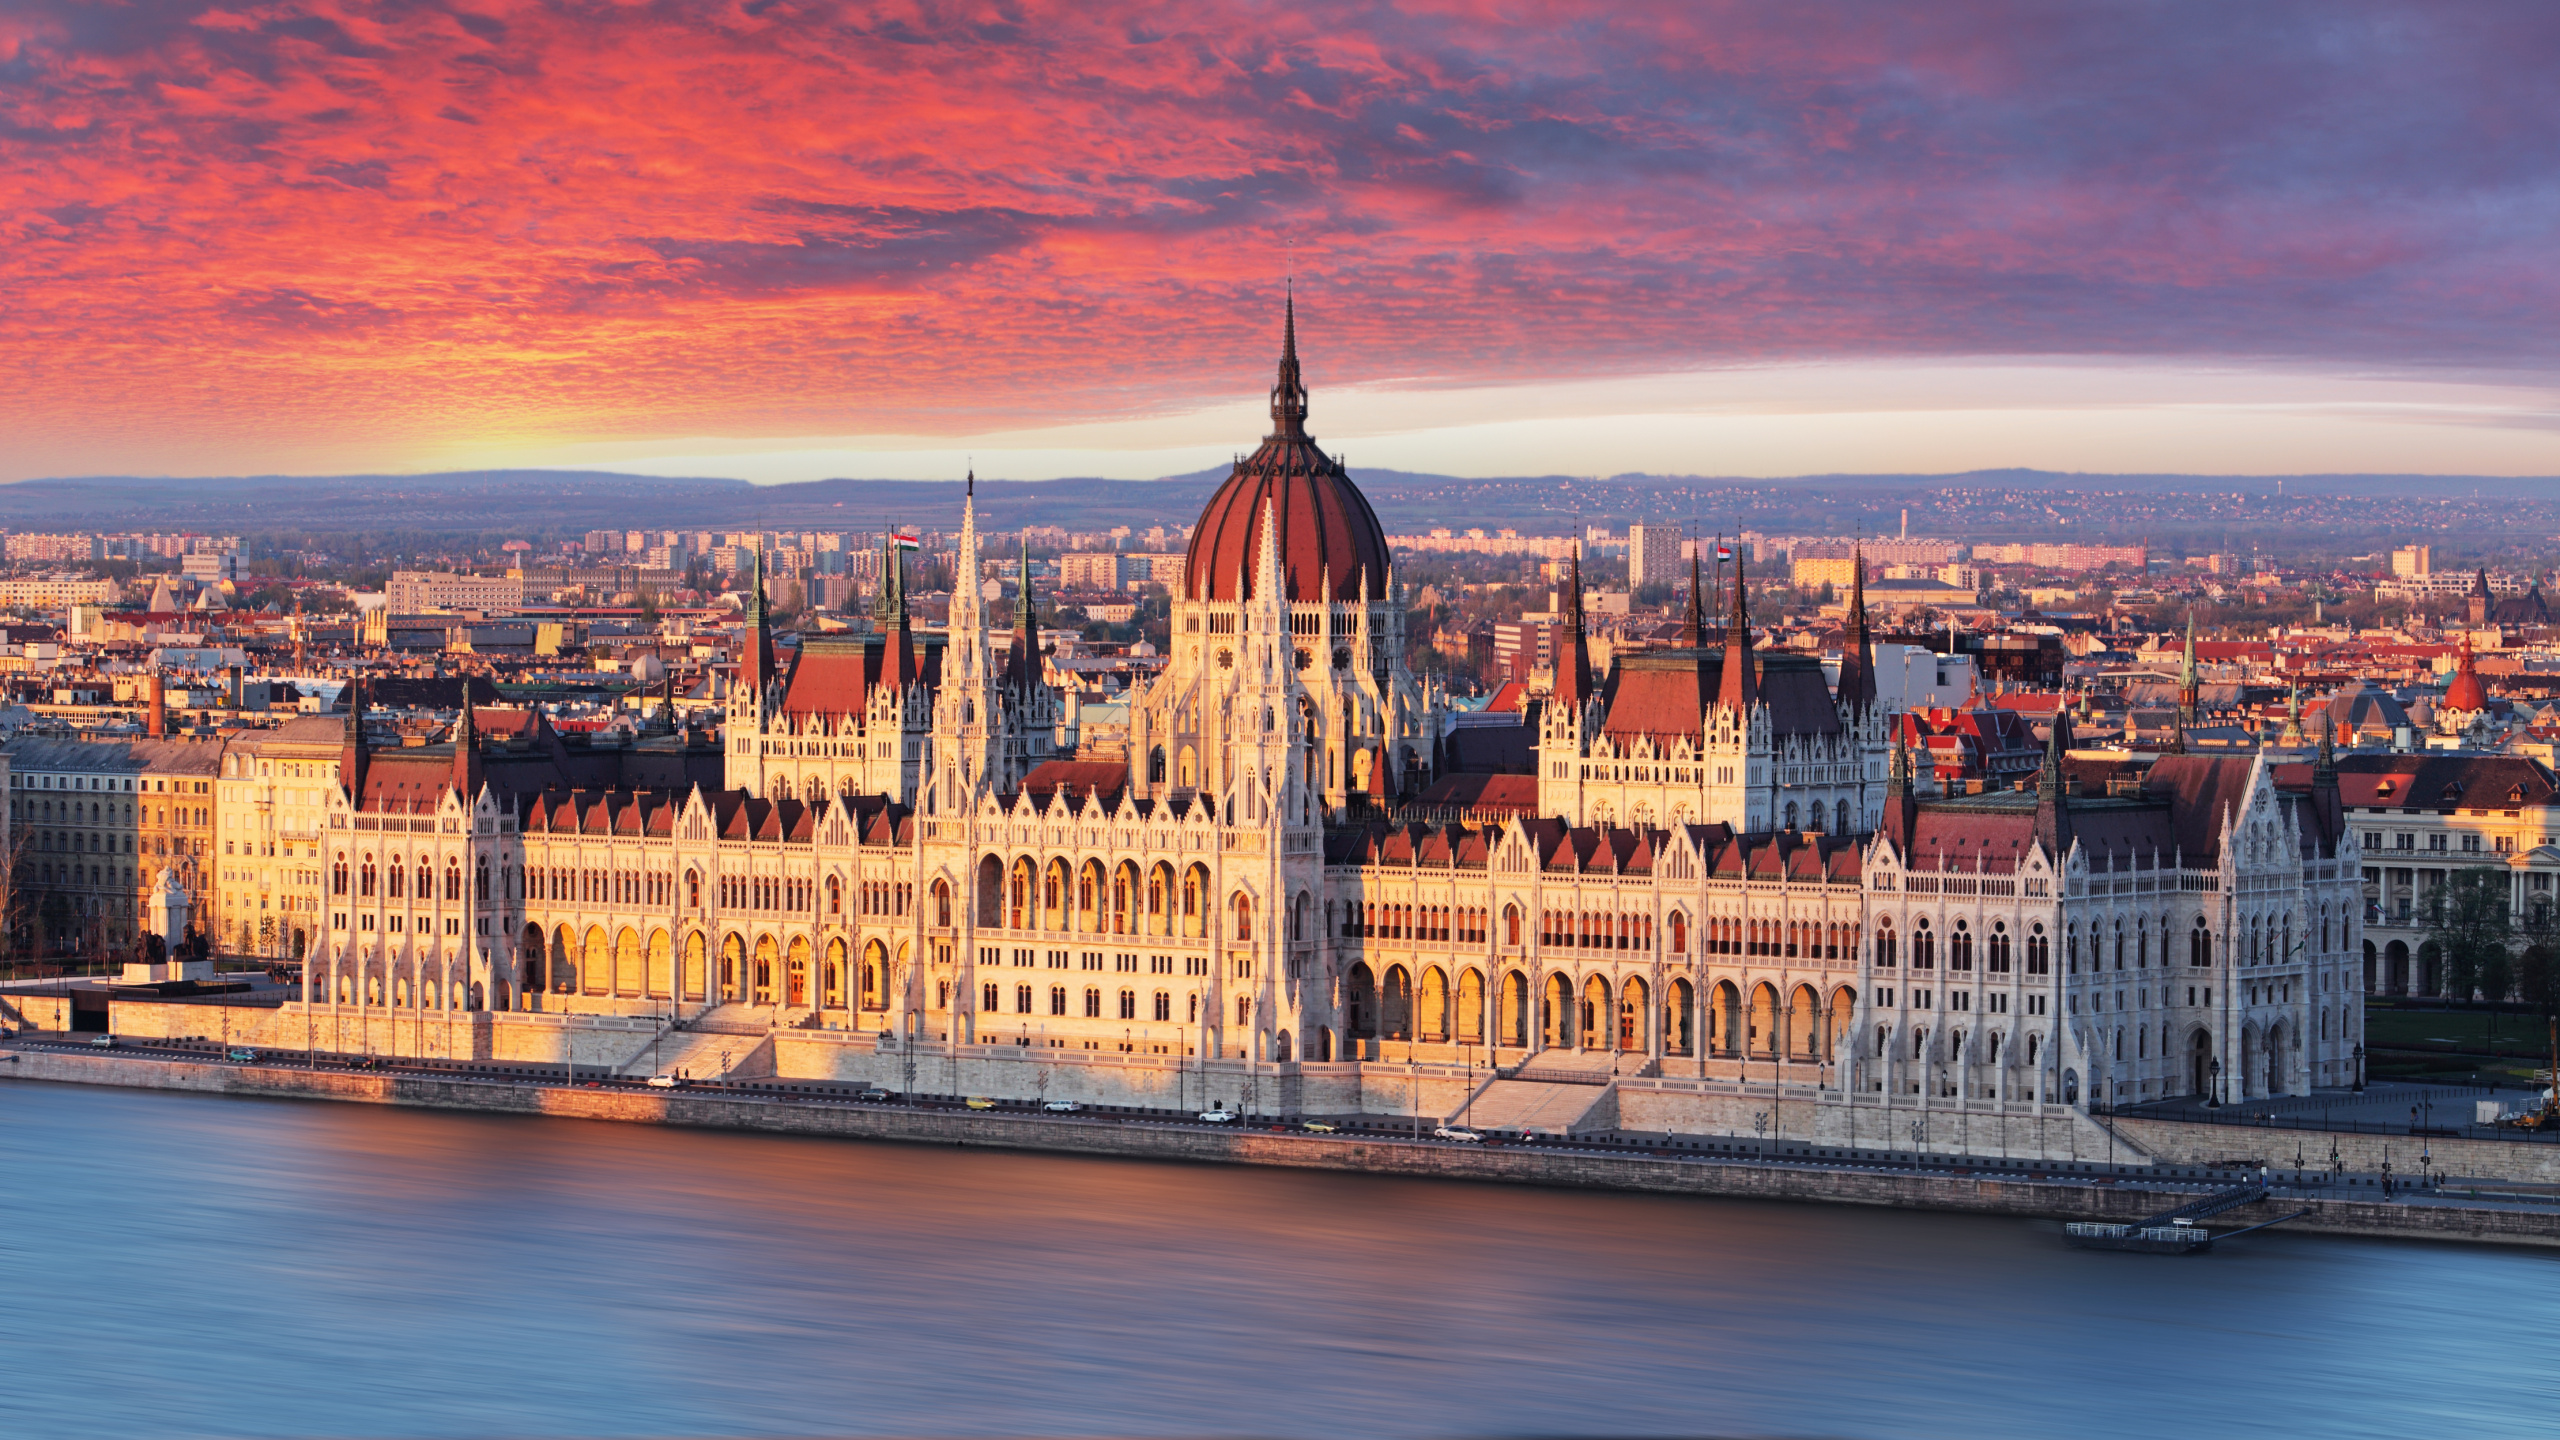 Обои Здание Венгерского Парламента, ориентир, город, городской пейзаж, линия горизонта в разрешении 2560x1440